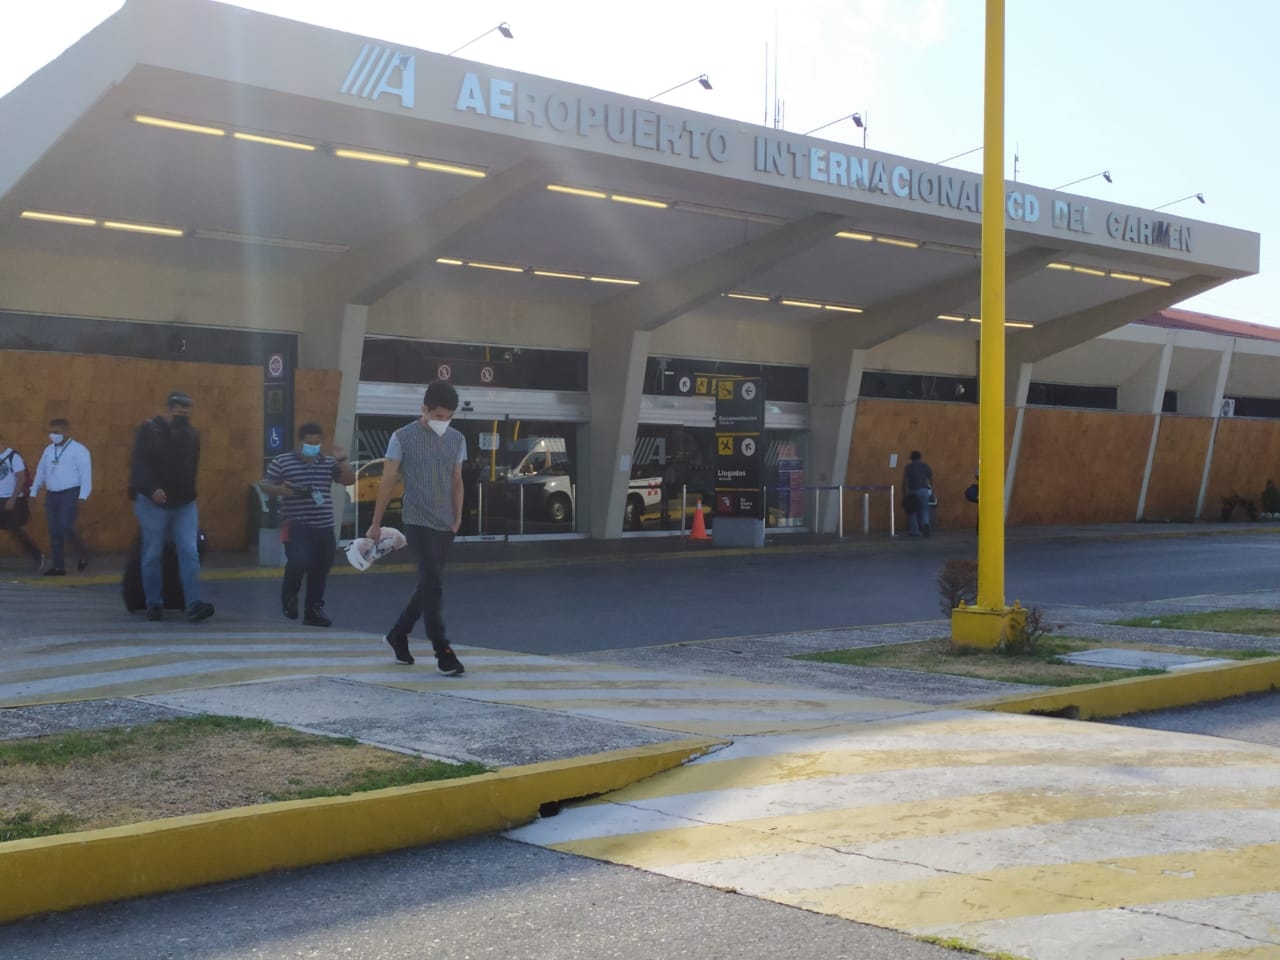 Ciudad del Carmen: Pasajero del aeropuerto gasta más de 300 pesos en artículos anticovid